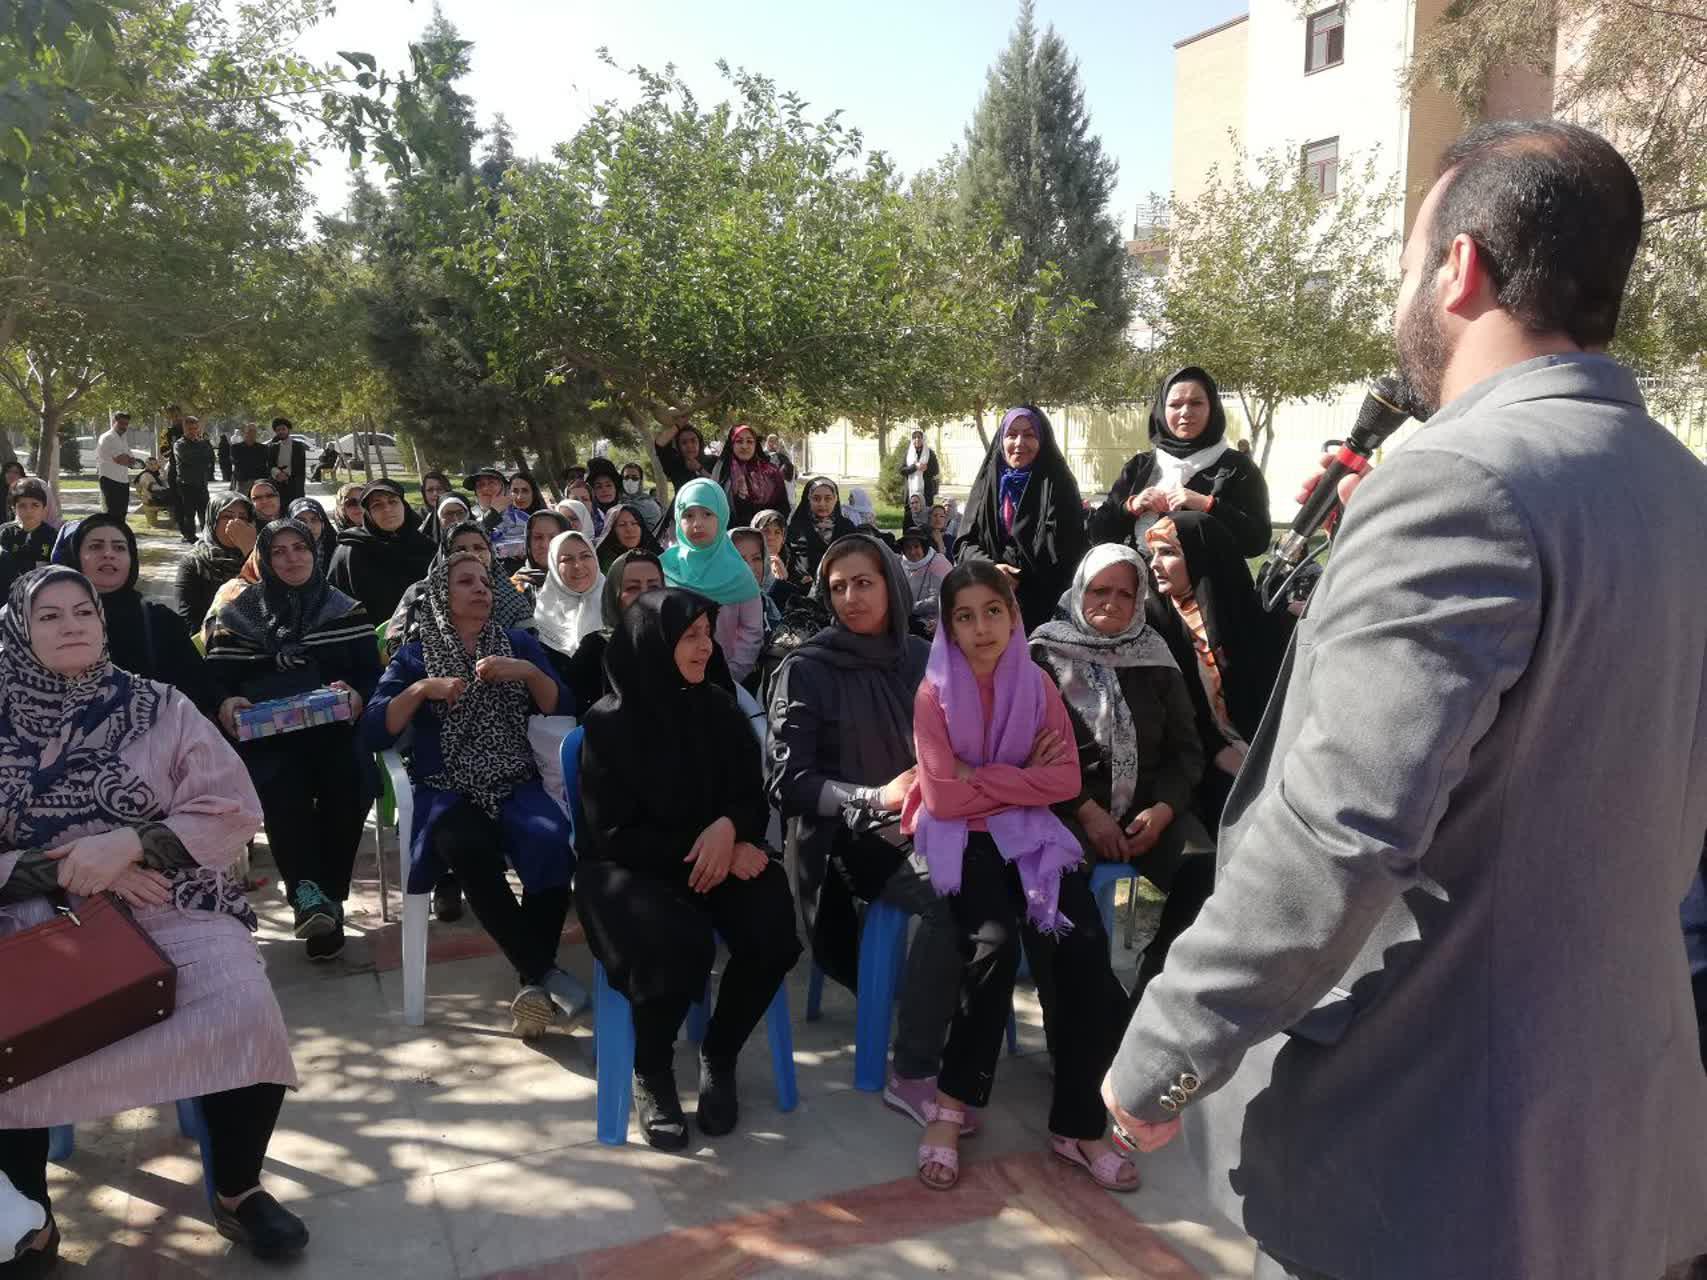 برگزاری جشن میلاد پیامبر اکرم(ص) و رئیس مذهب تشیع در بوستان شهید درخشان